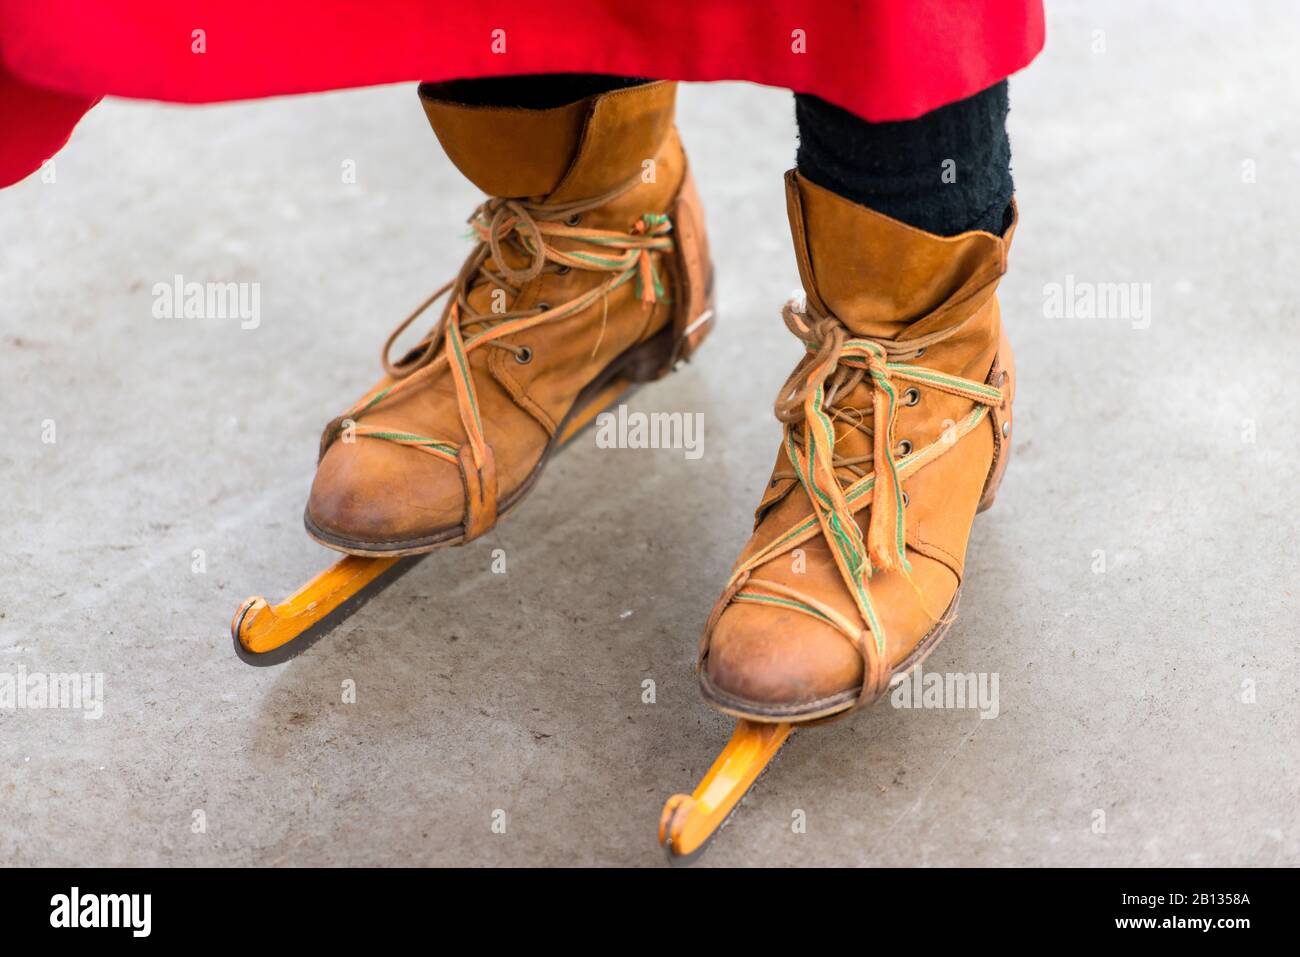 Patinage historique avec patins en bois et chaussures en cuir Banque D'Images